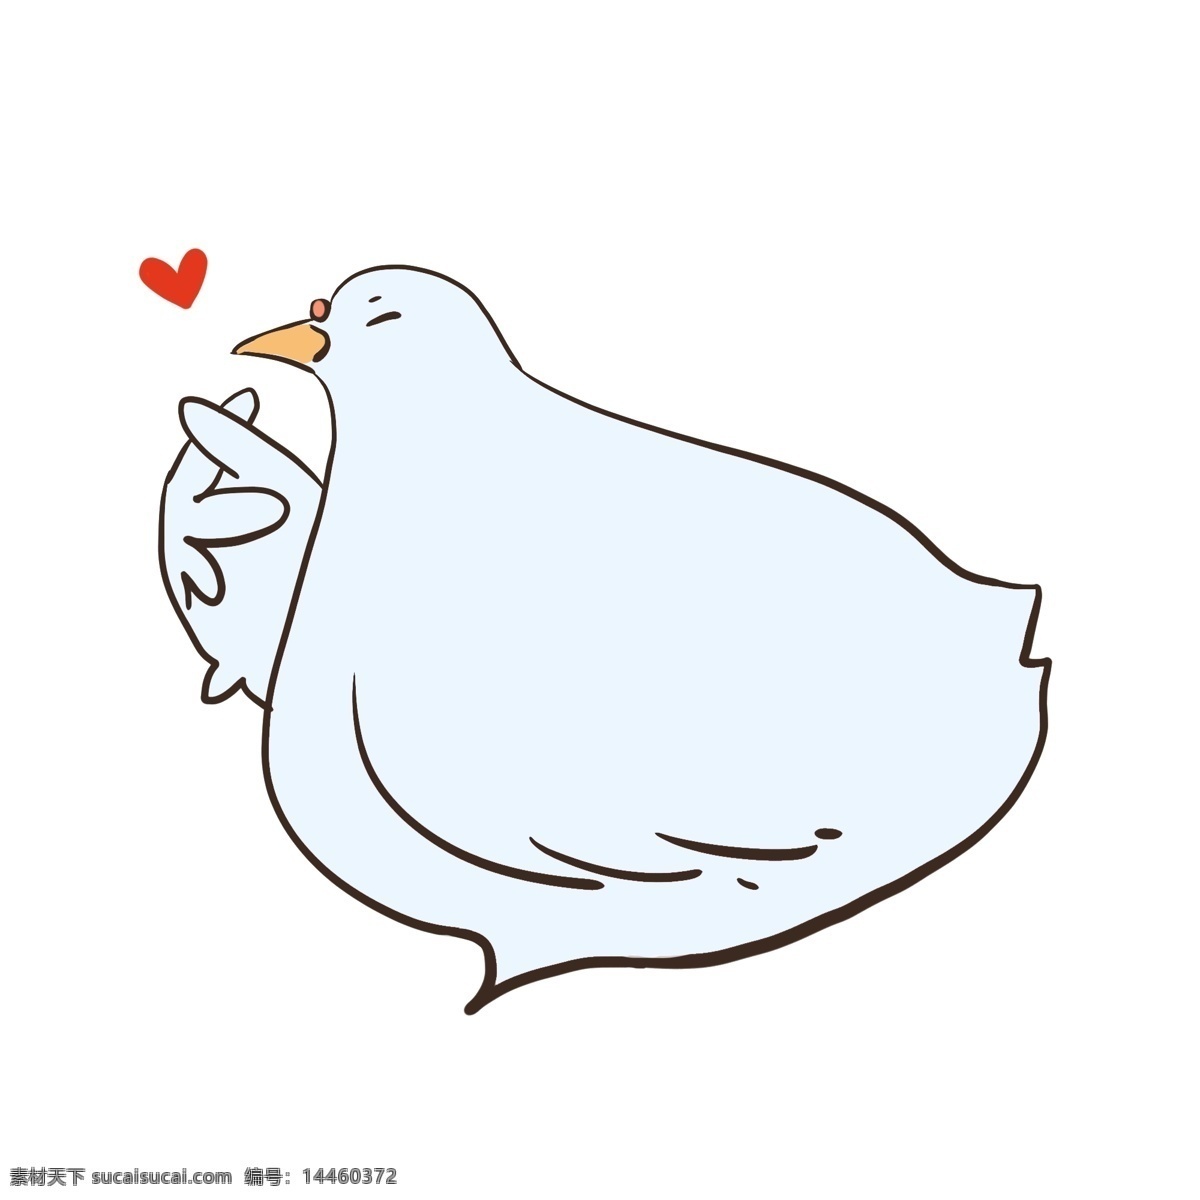 对话框 小鸡 爱心 卡通 可爱 趣味 手绘 鸽子 蓝色 浅色 灰色 童真 商业海报 广告招贴